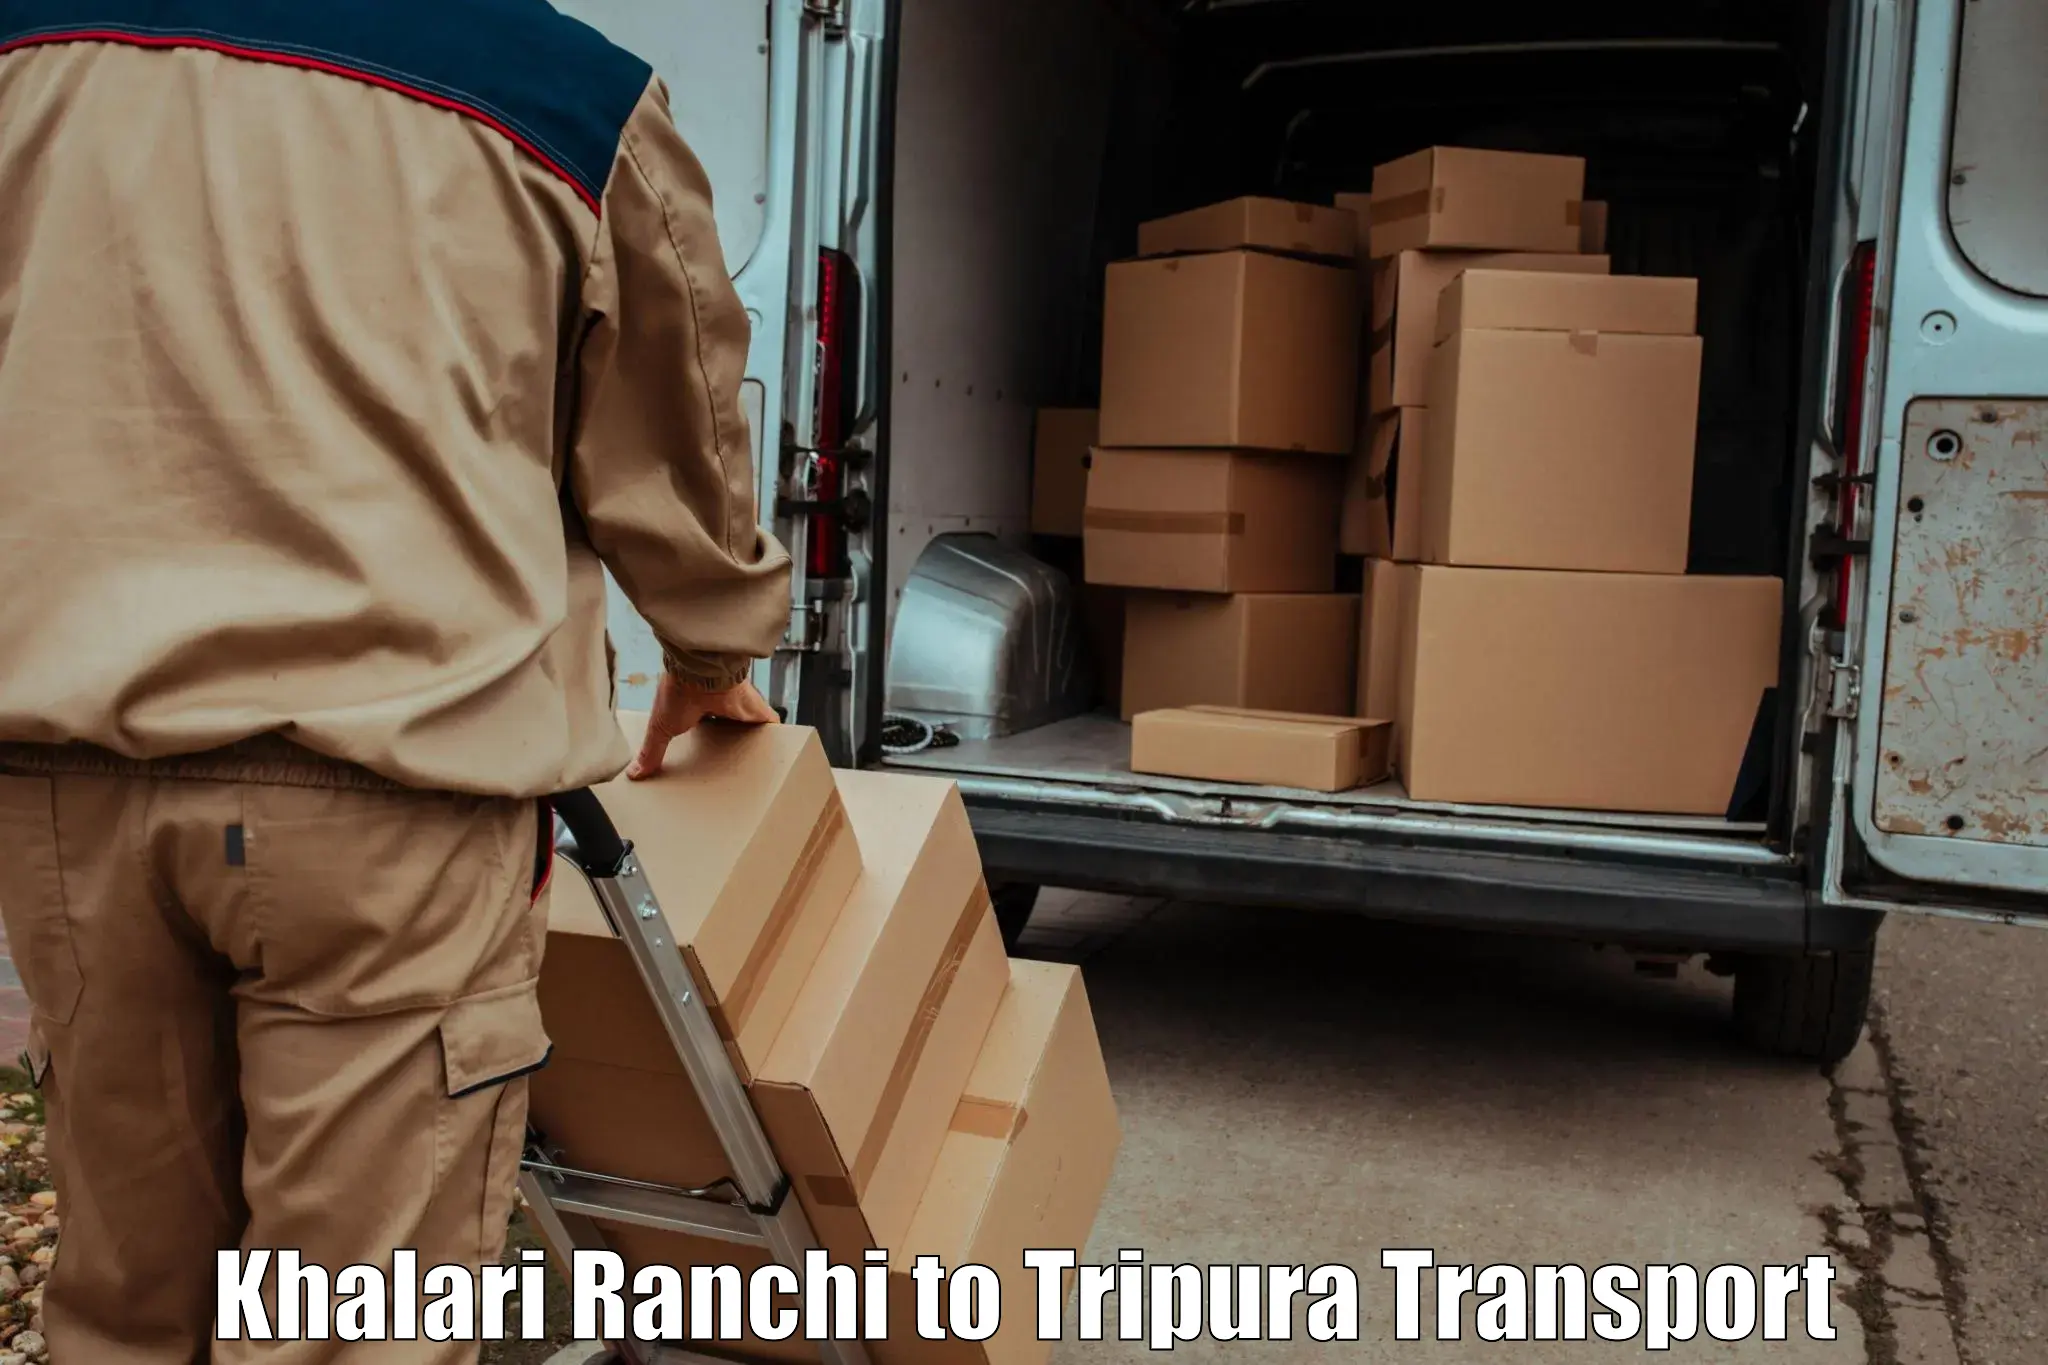 Intercity goods transport Khalari Ranchi to Kamalpur